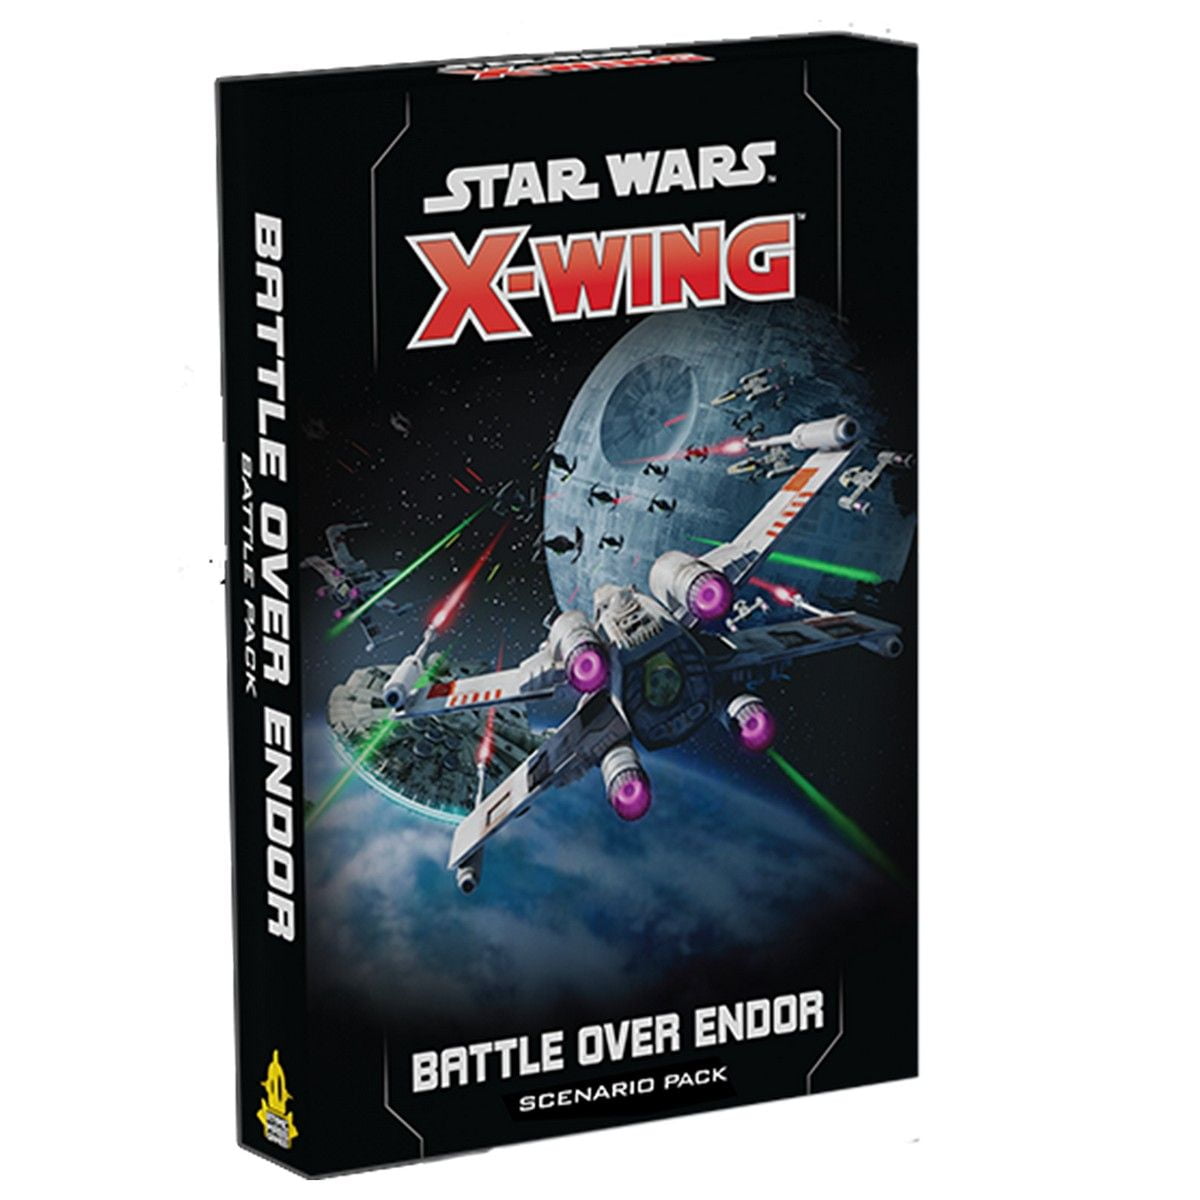 Star Wars X-Wing: Battle Over Endor - Scenario Pack